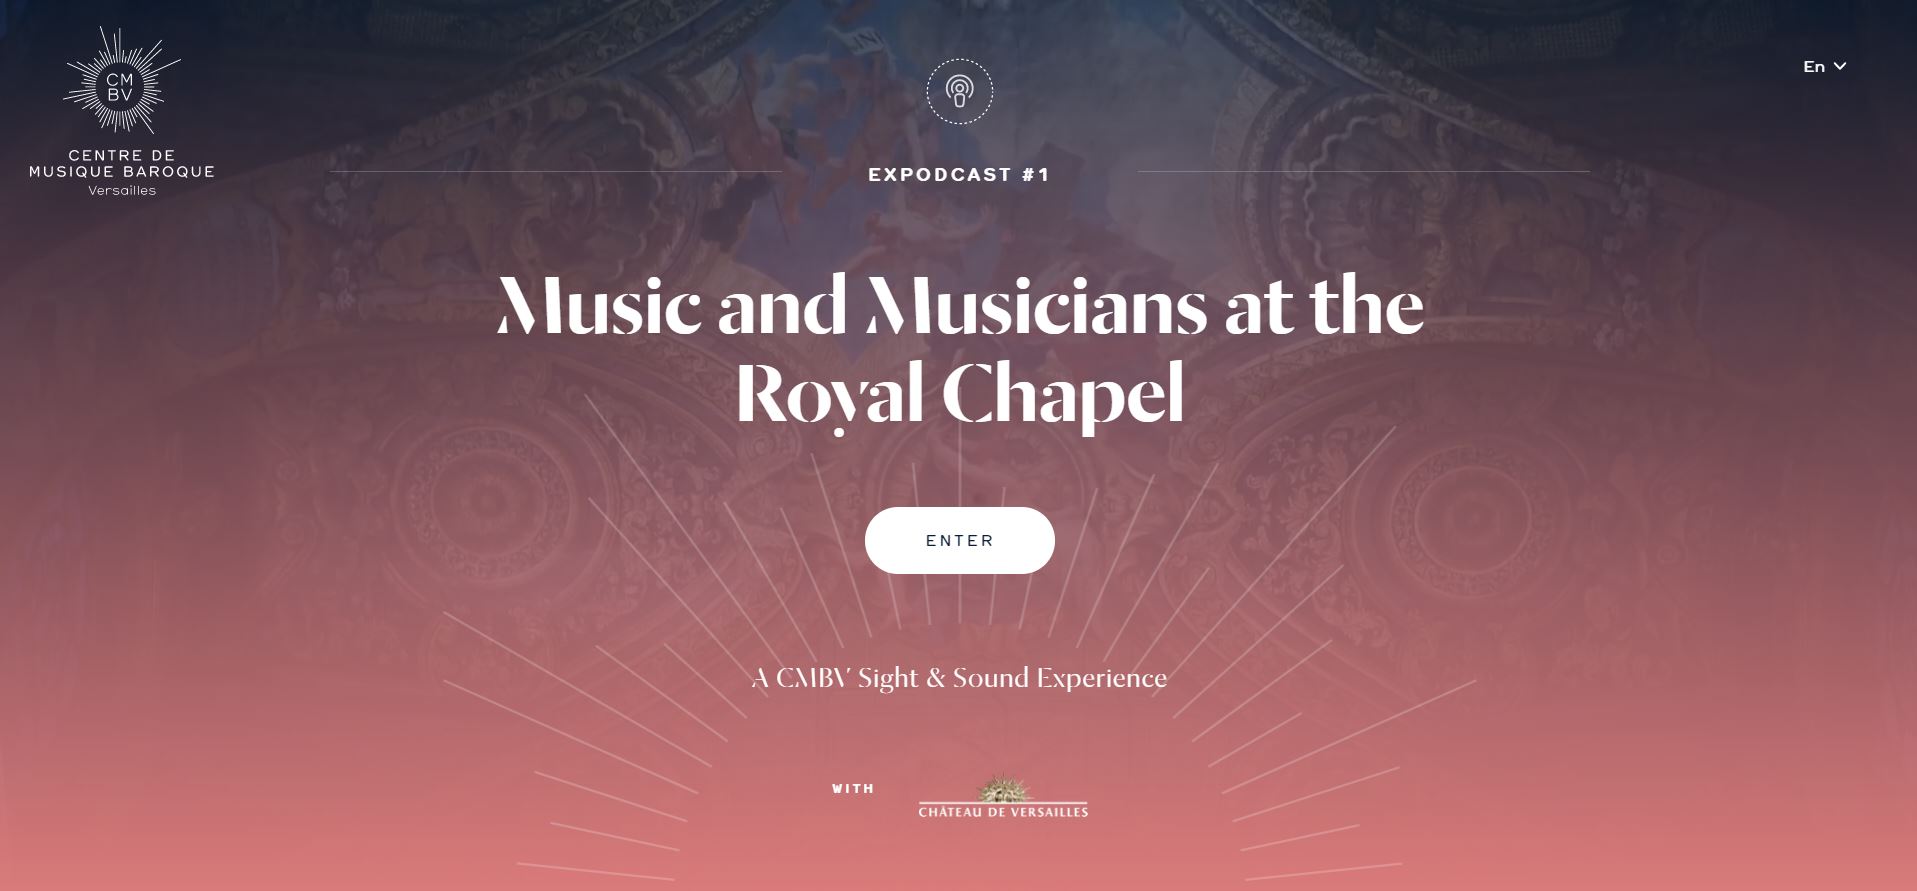 Μουσική και μουσικοί στο βασιλικό παρεκκλήσι